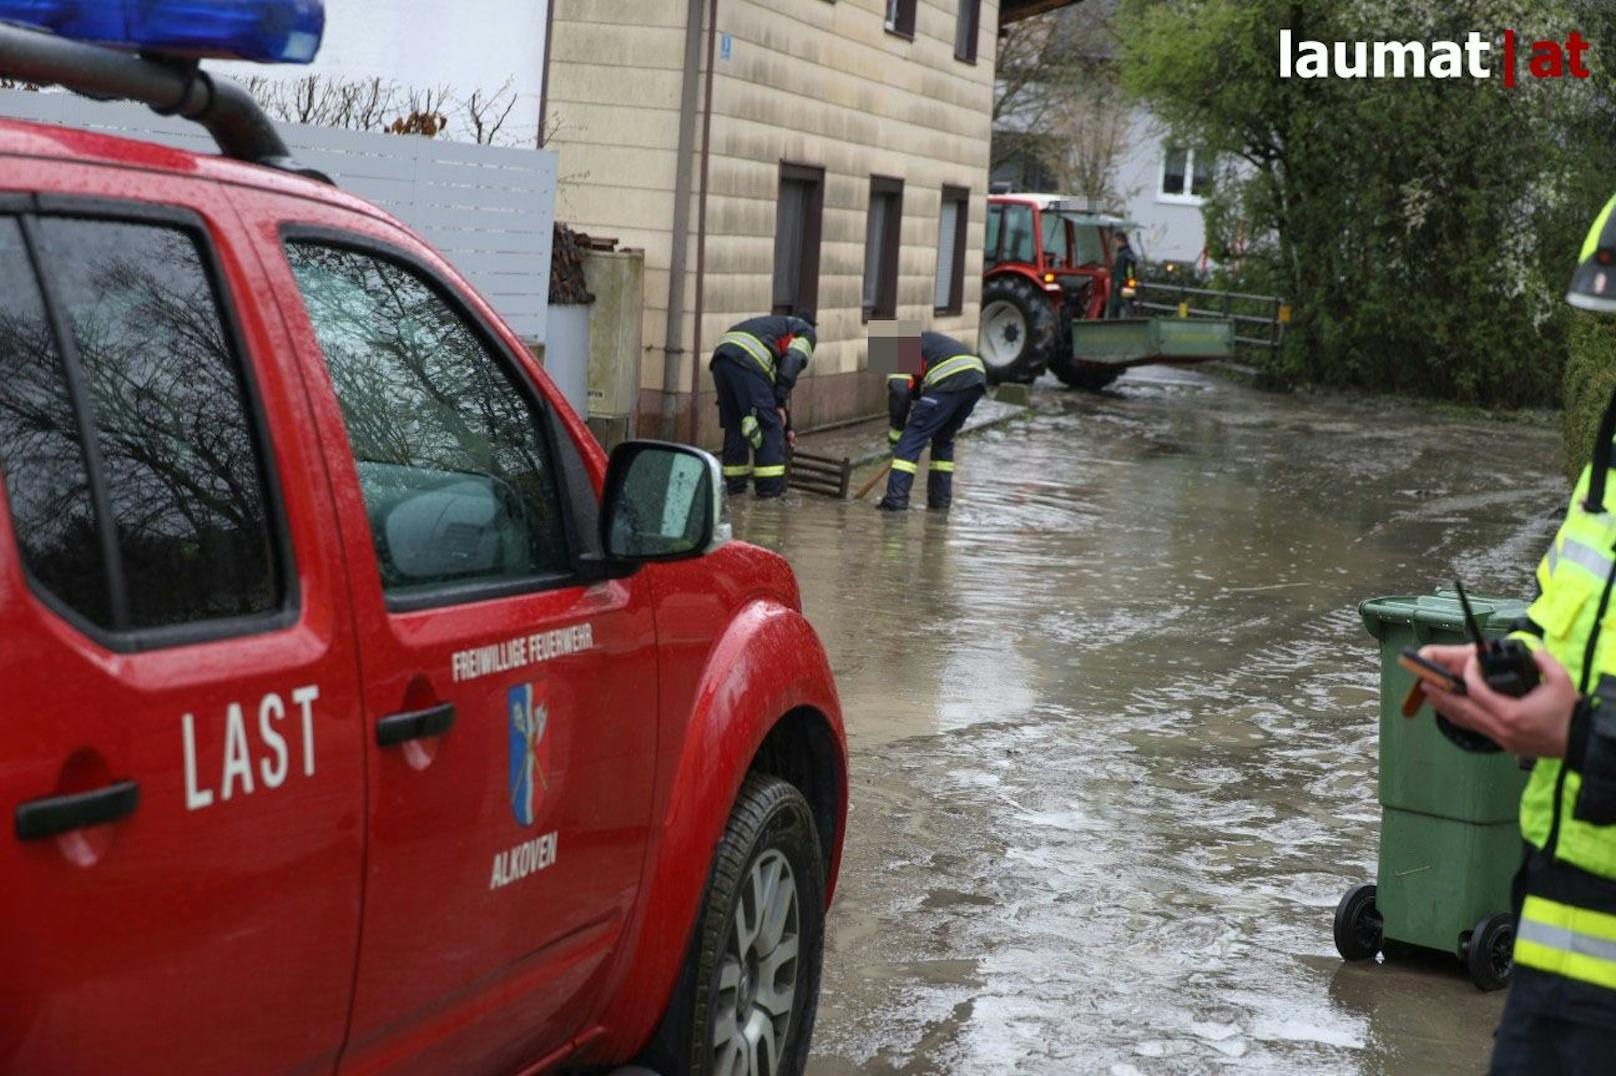 Feuerwehrleute mussten vor allem Straßen von umgestürzten Bäumen befreien, Autos bergen, Keller von Wohnhäusern auspumpen und Überschwemmungen verhindern.